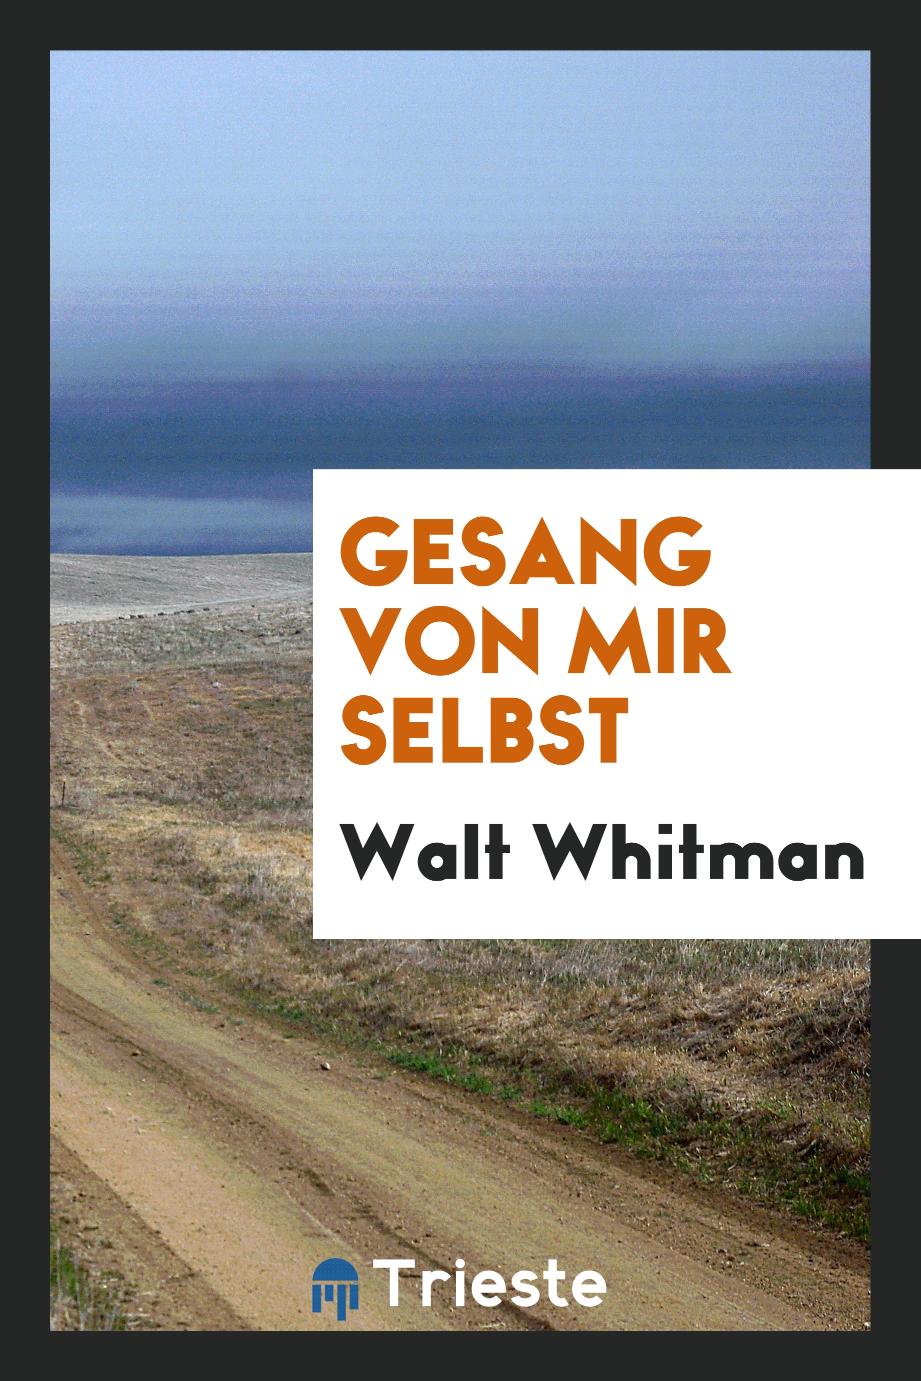 Walt Whitman - Gesang von mir selbst